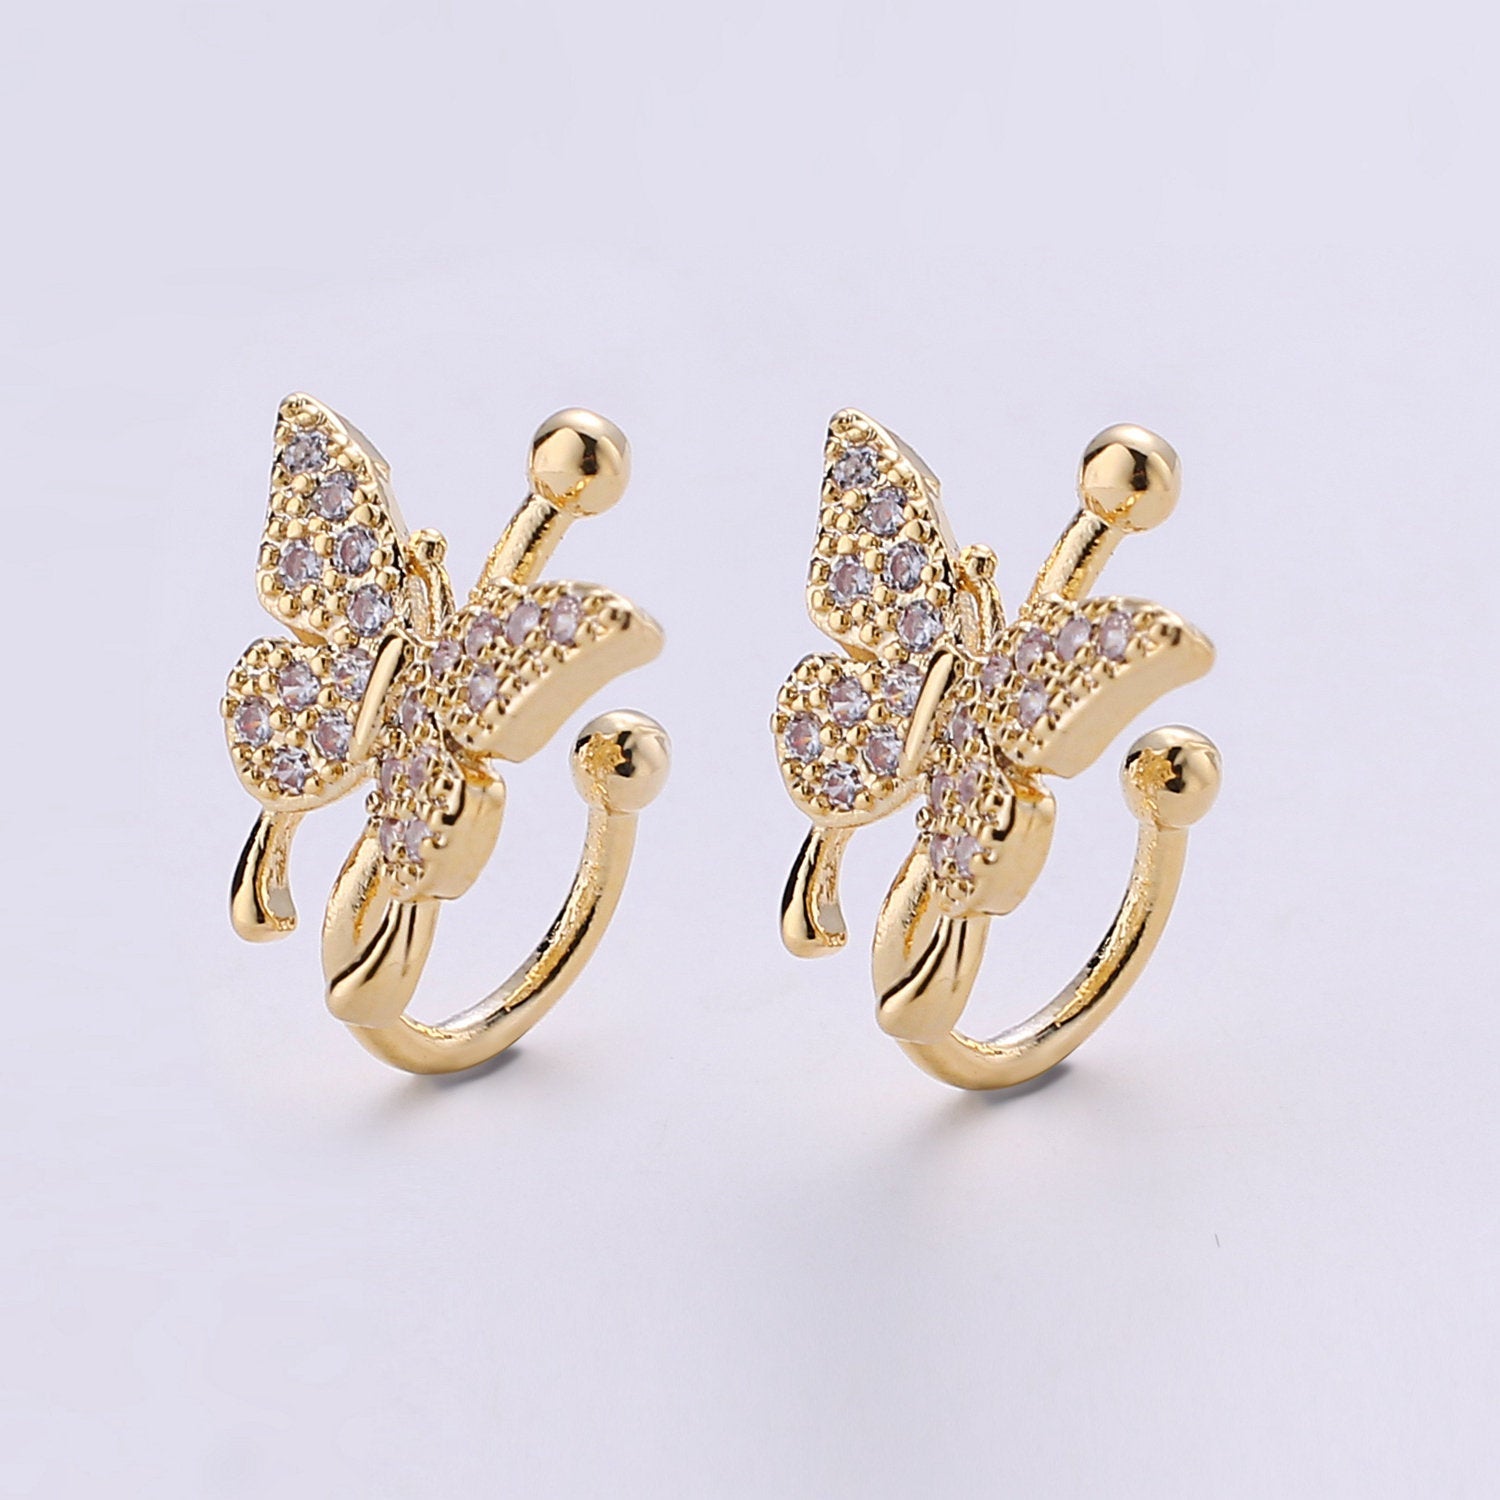 1x Butterfly Ear Cuff Ear Wraps - Butterfly Jewelry - Fake Pierced Earrings - Fake Piercing - Gifts For Teens -Teenage Girl Gift Idea - DLUXCA